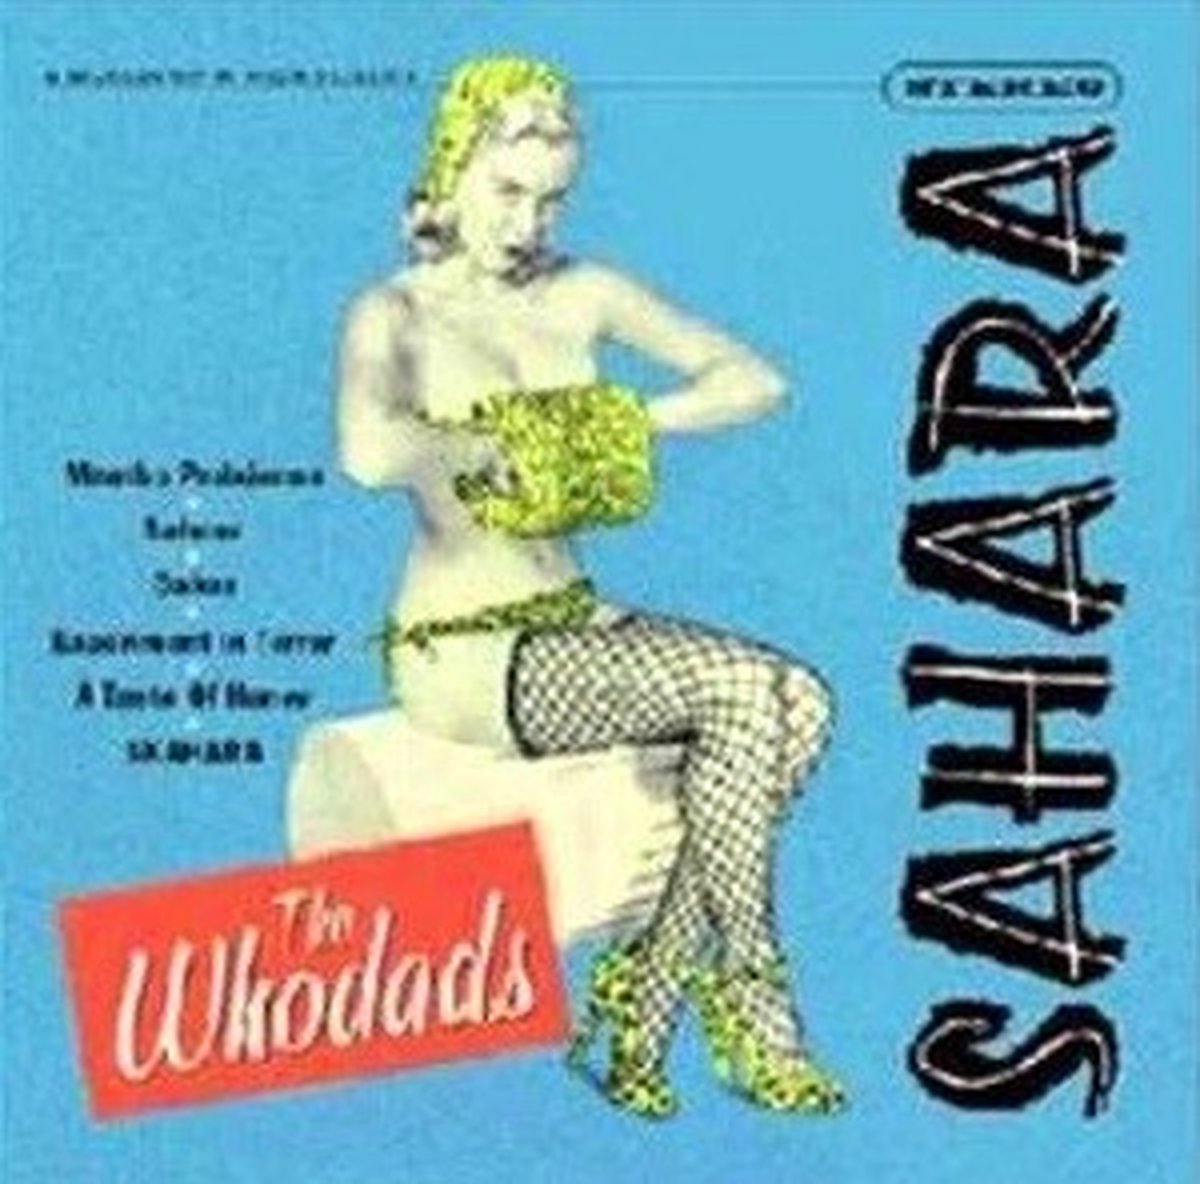 The Whodads - Sahara (10